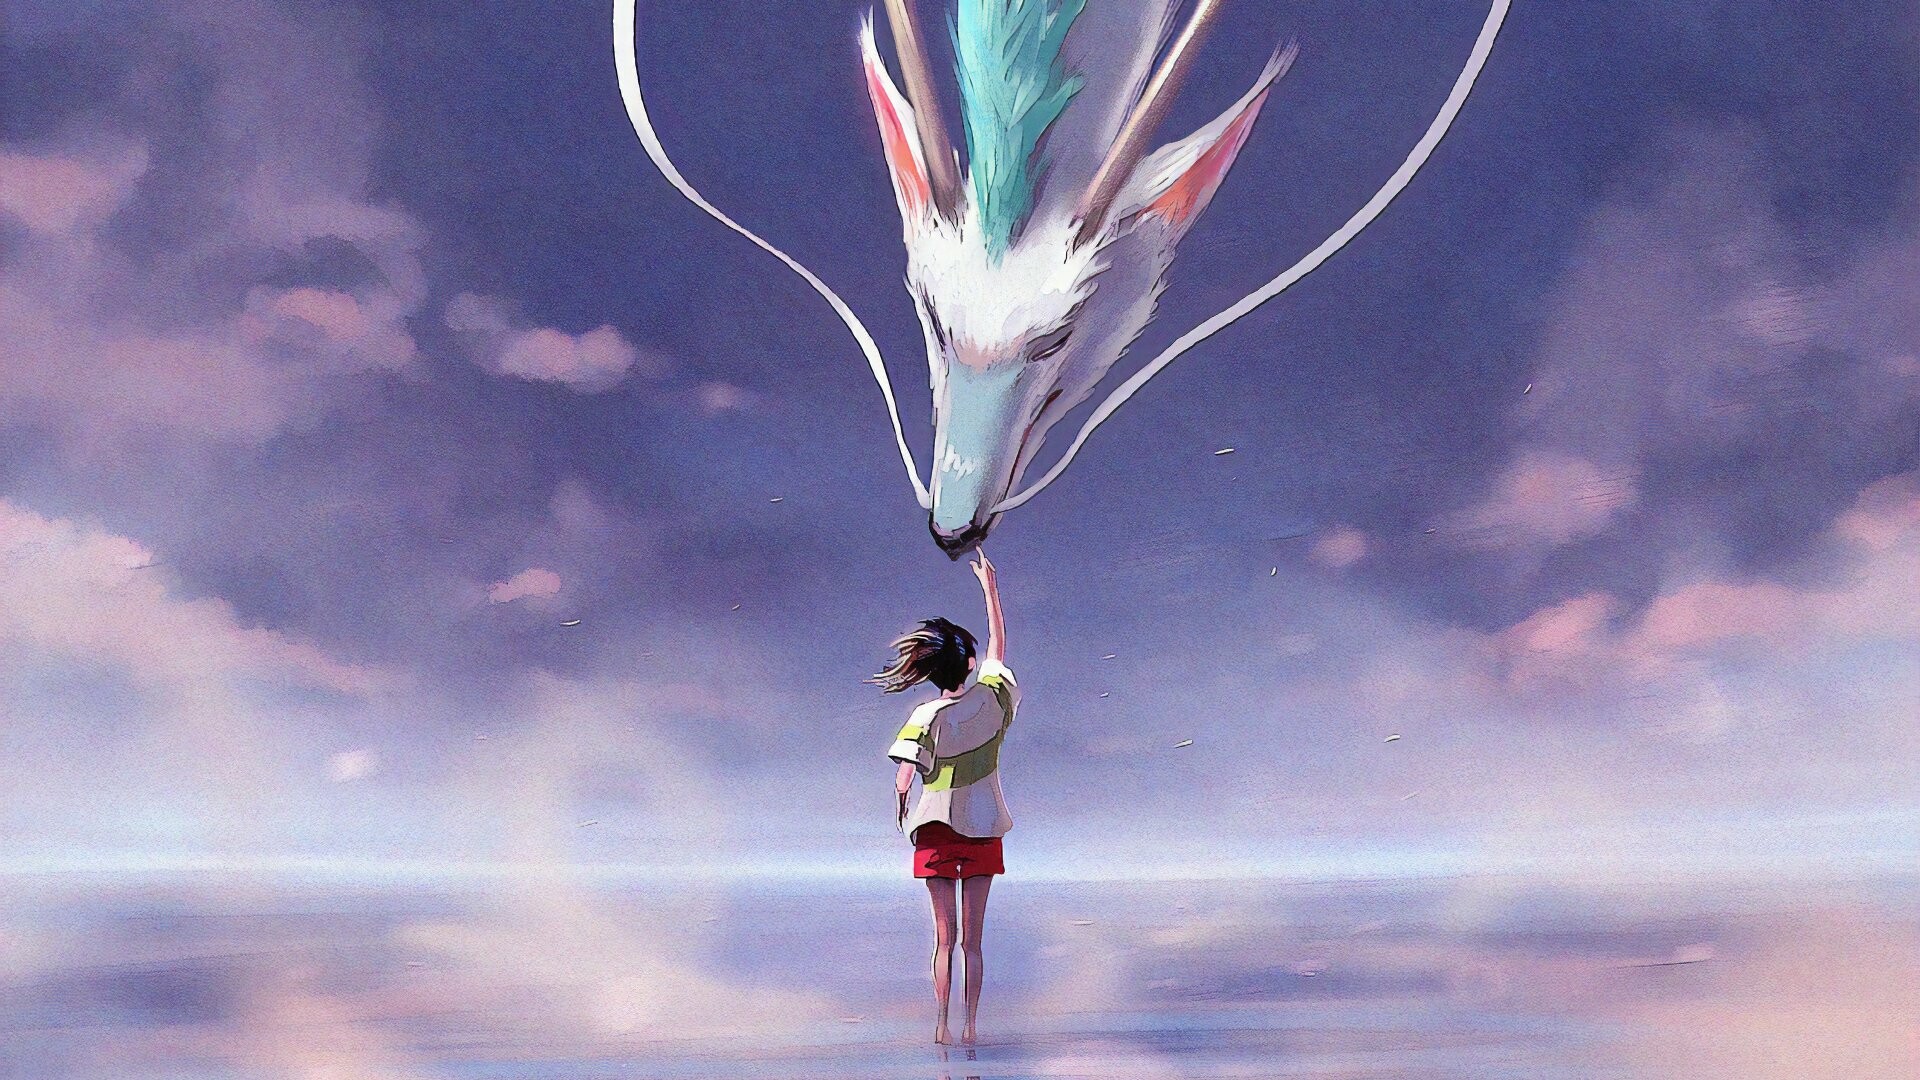 Spirited Away: Studio Ghibli movie, Chihiro, Fictional character. 1920x1080 Full HD Wallpaper.